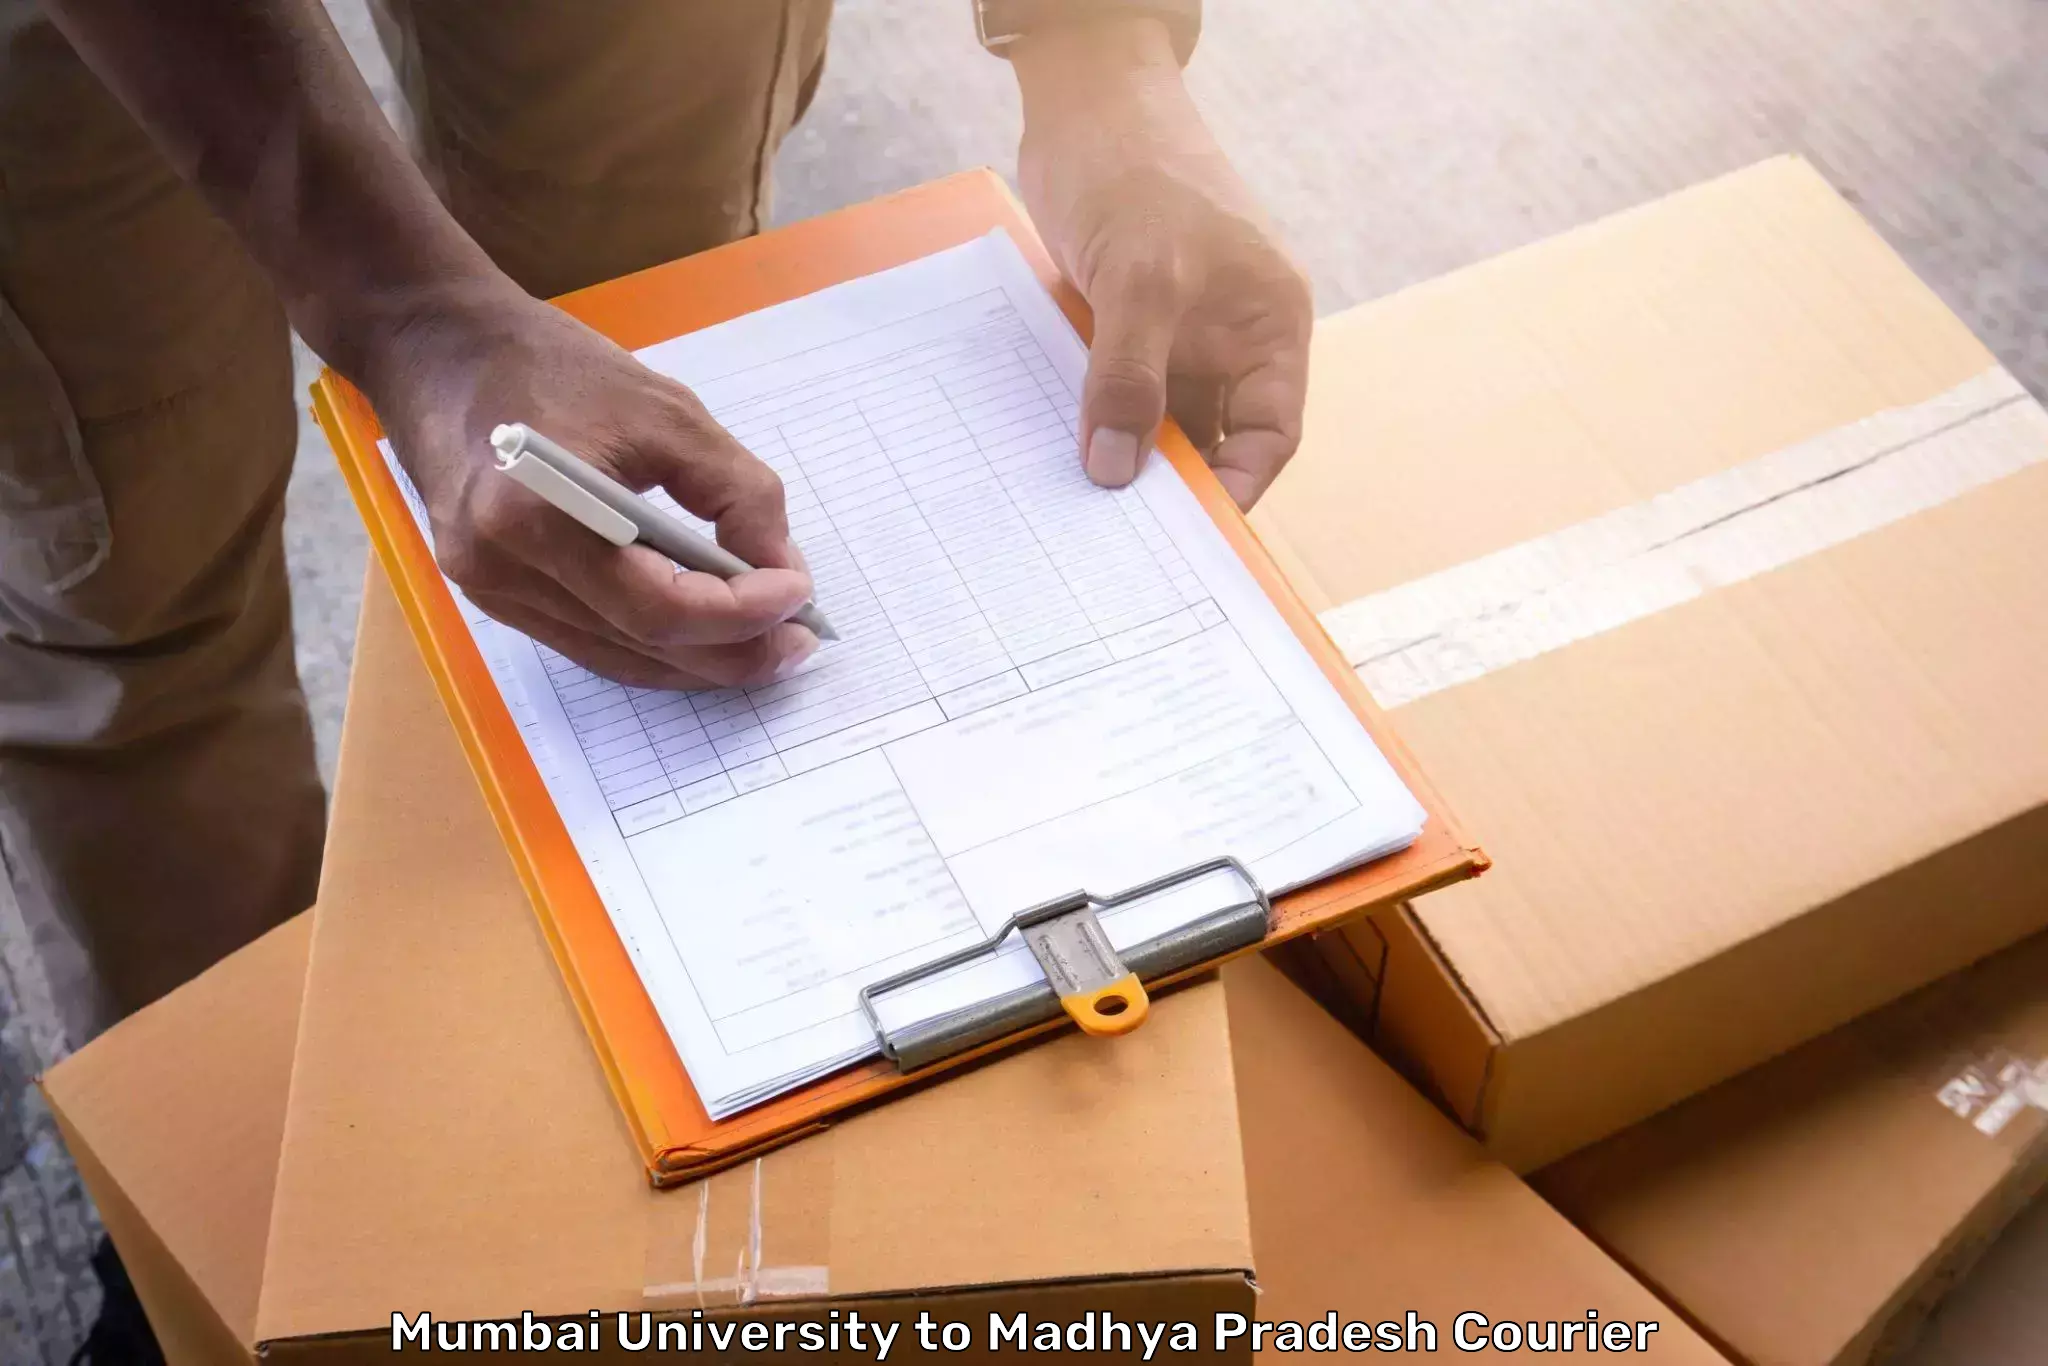 Baggage shipping experts Mumbai University to Sendhwa